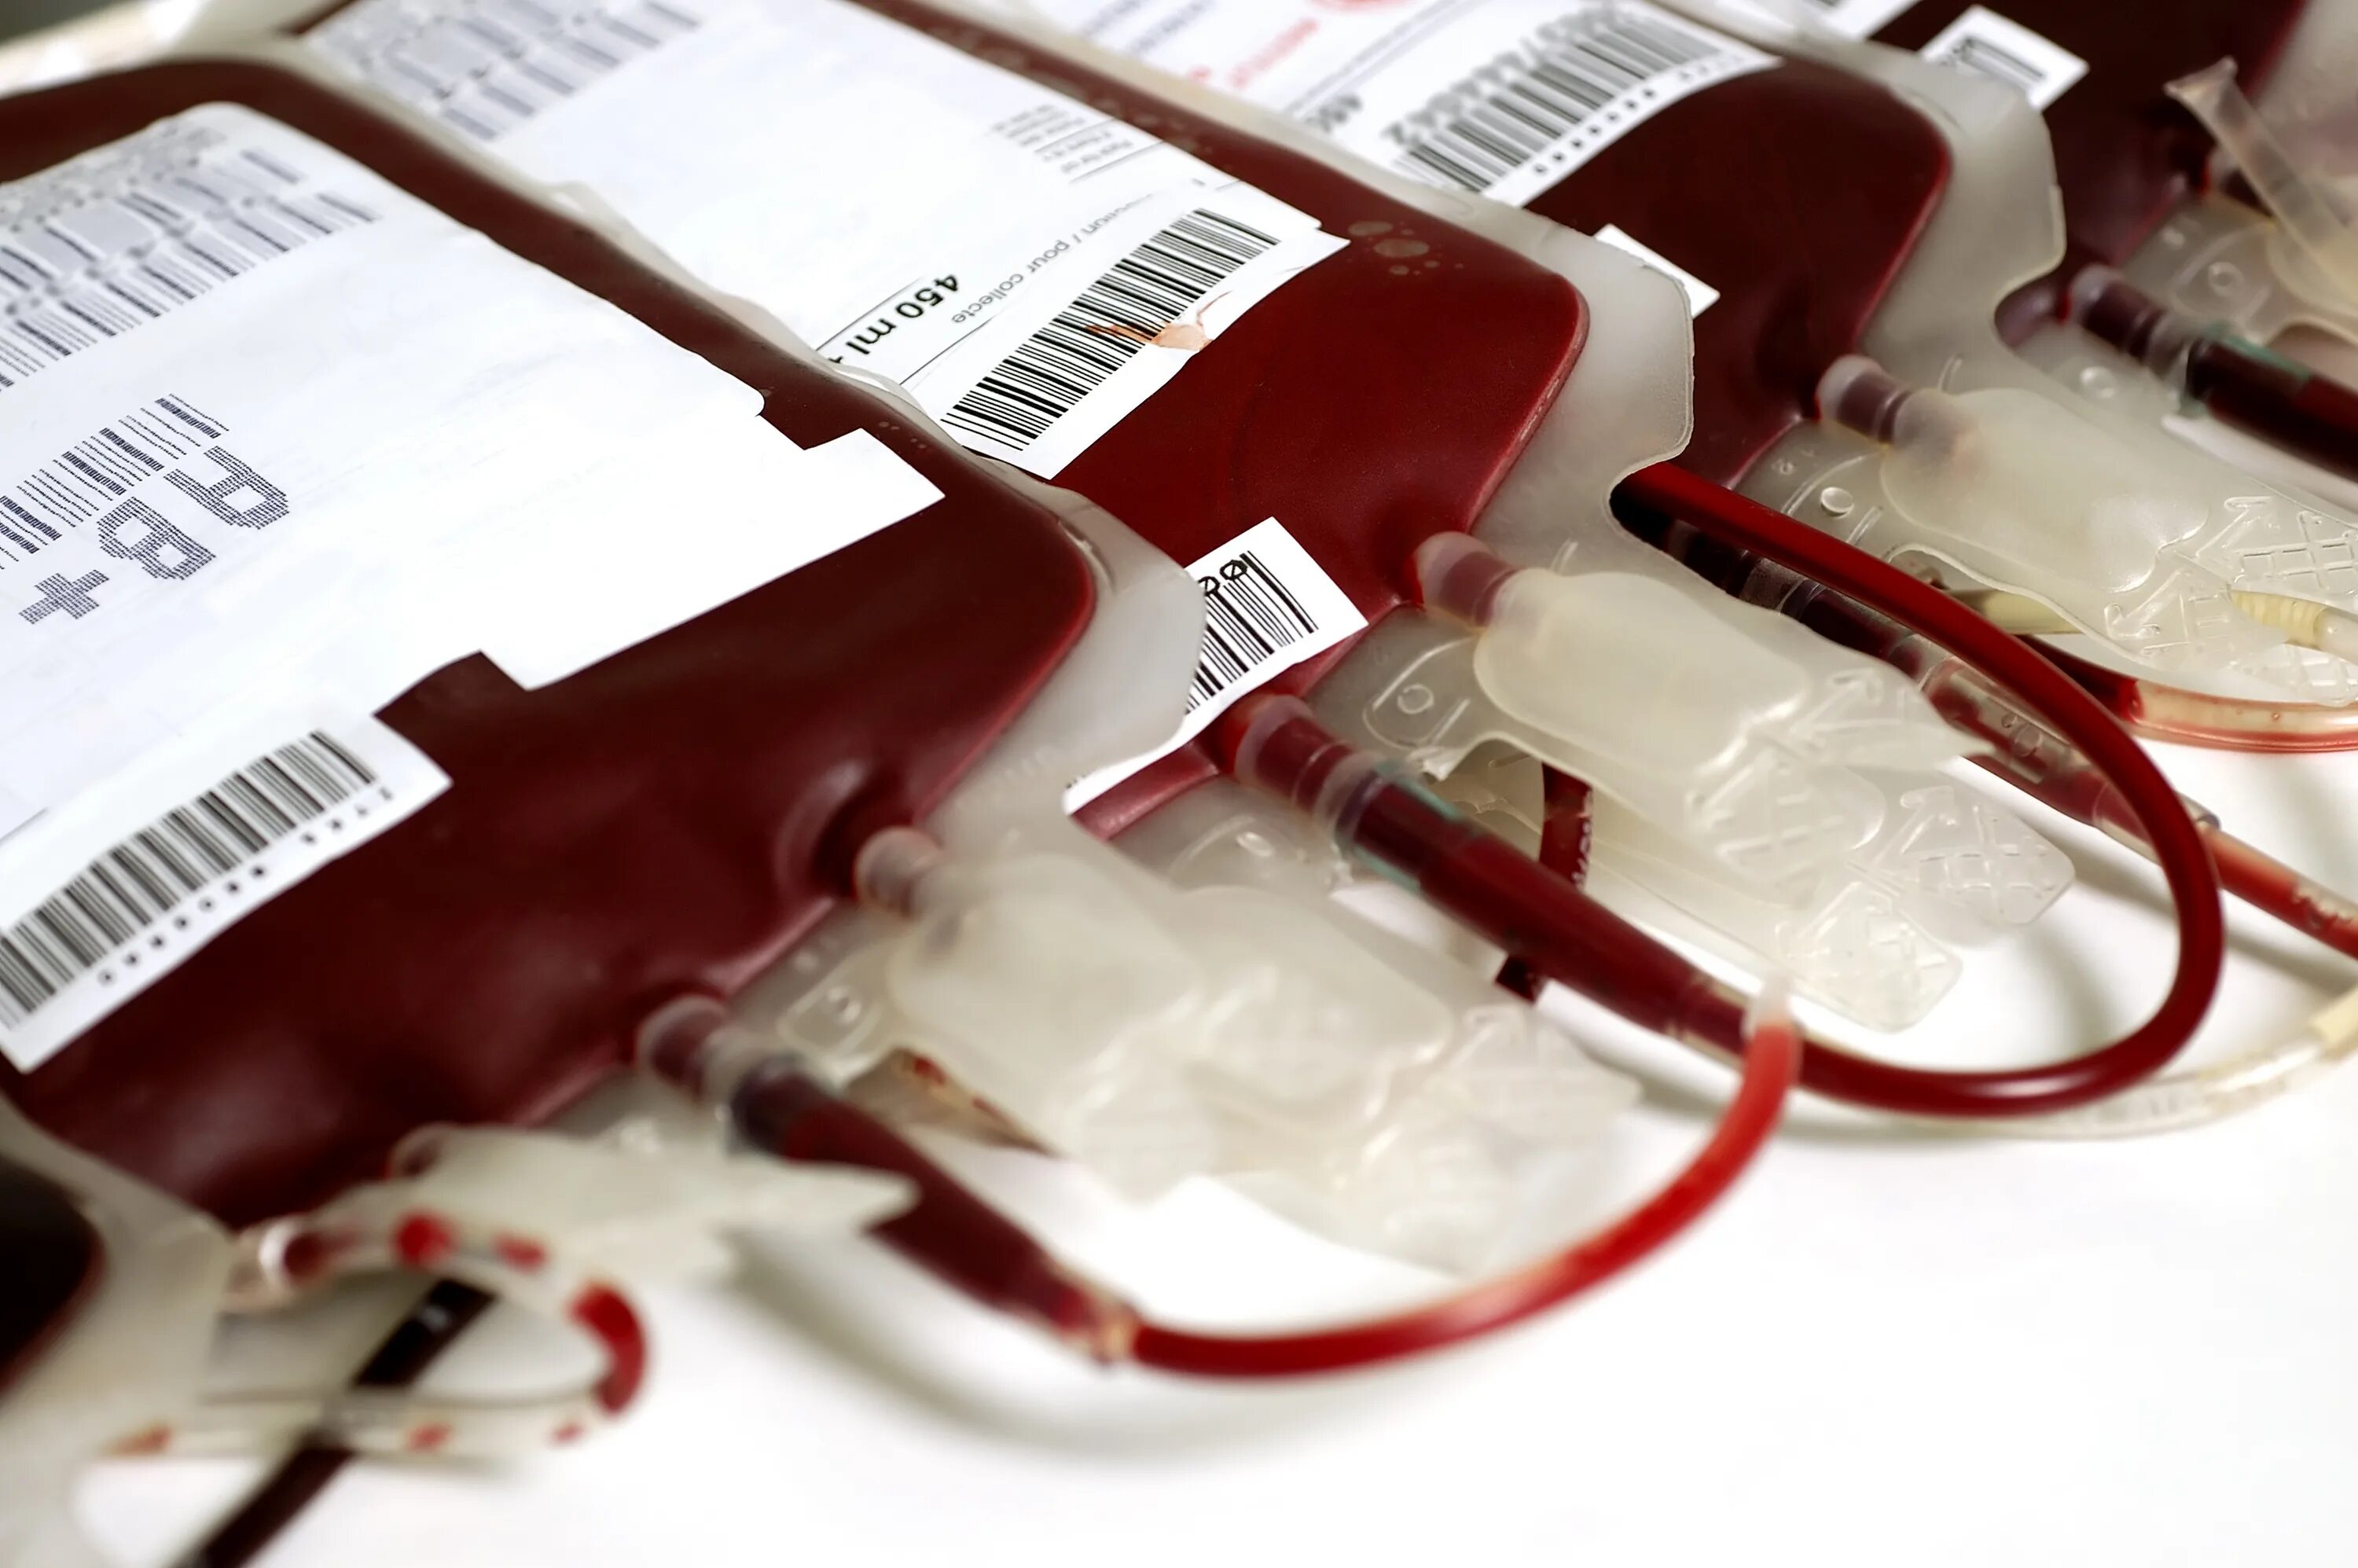 Метод донора. Гемотрансфузия плазмы крови. Контейнер для переливания крови.